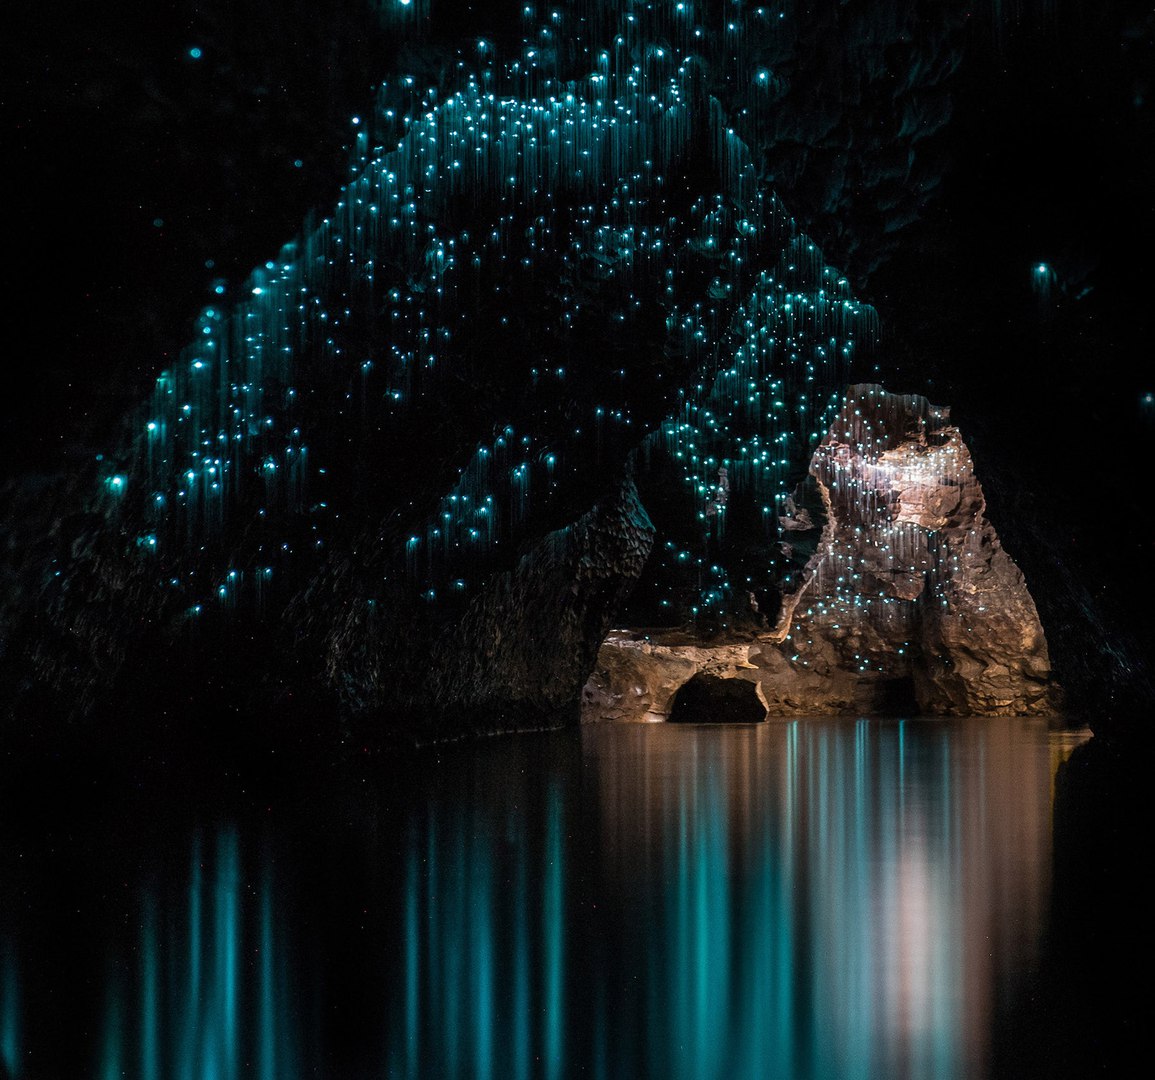 Waitomo Caves in New Zealand